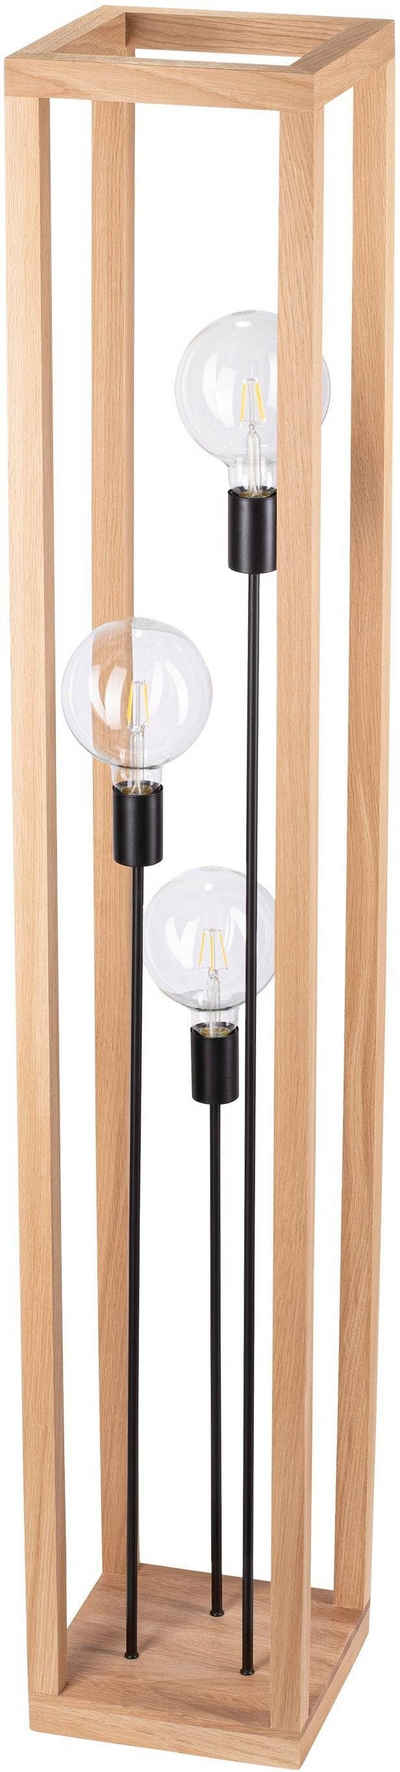 SPOT Light Stehlampe KAGO, ohne Leuchtmittel, Naturprodukt aus Eichenholz, Эко-товар mit FSC®-Zertifikat